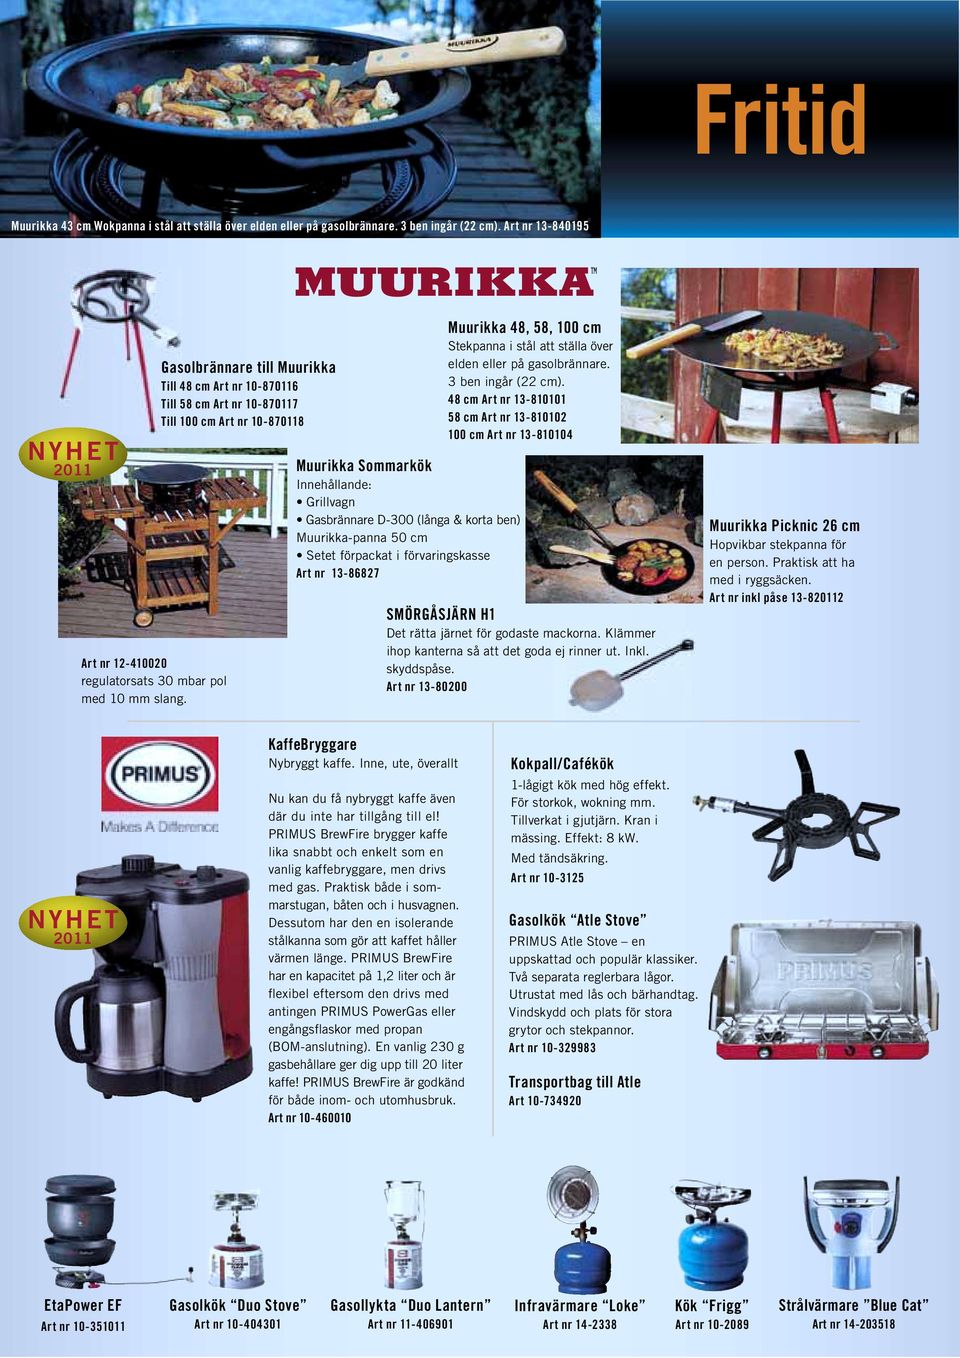 Muurikka-panna 50 cm Setet förpackat i förvaringskasse Art nr 13-86827 Muurikka 48, 58, 100 cm Stekpanna i stål att ställa över elden eller på gasolbrännare. 3 ben ingår (22 cm).